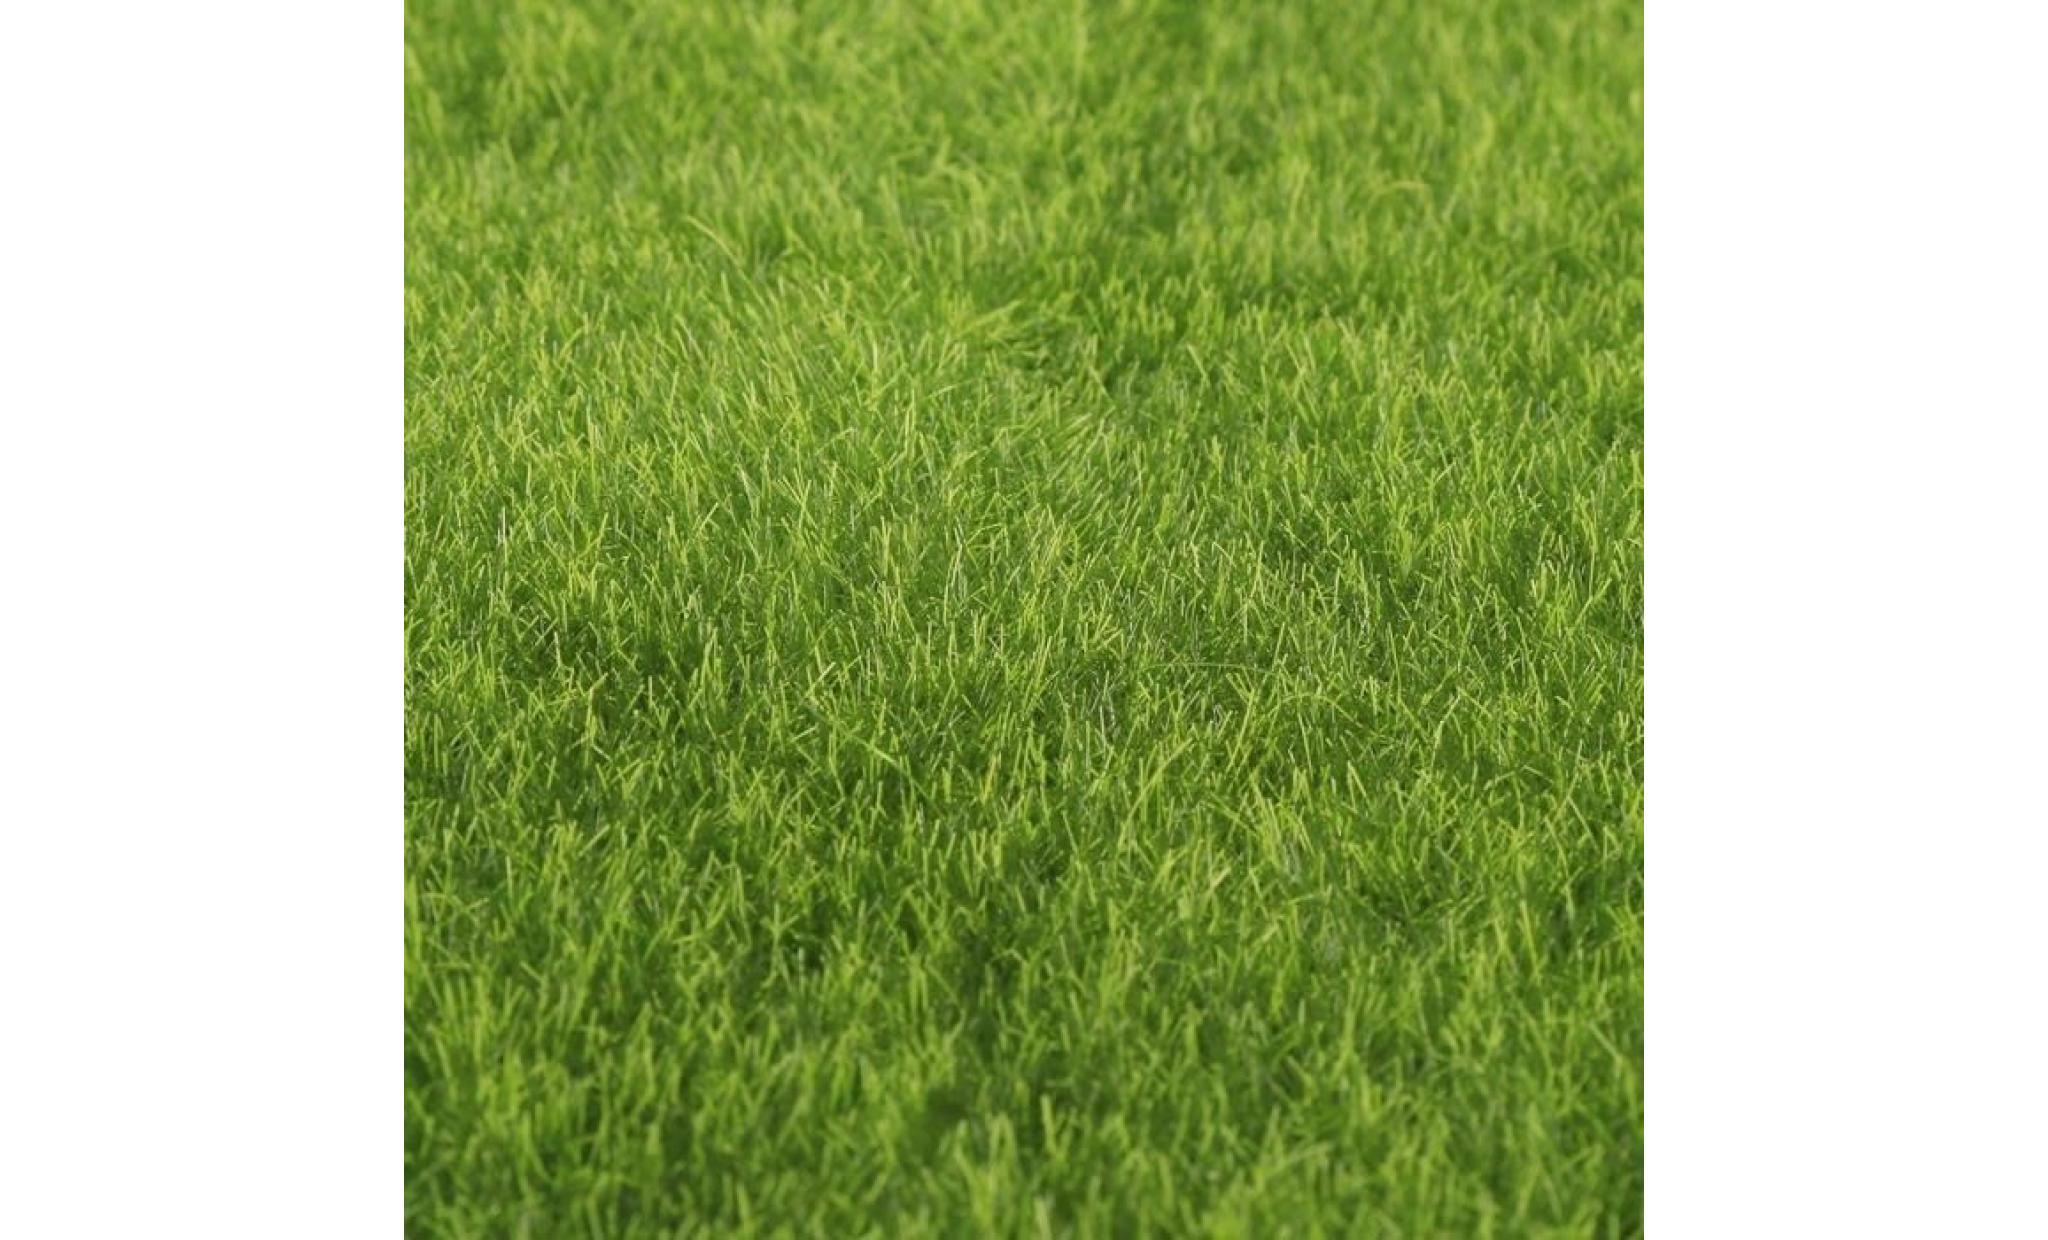 gazon synthétique herbe faux artificiel exterieur et intérieur haute densité résistant à l'usure pour terrasse jardin,30x30cm pas cher